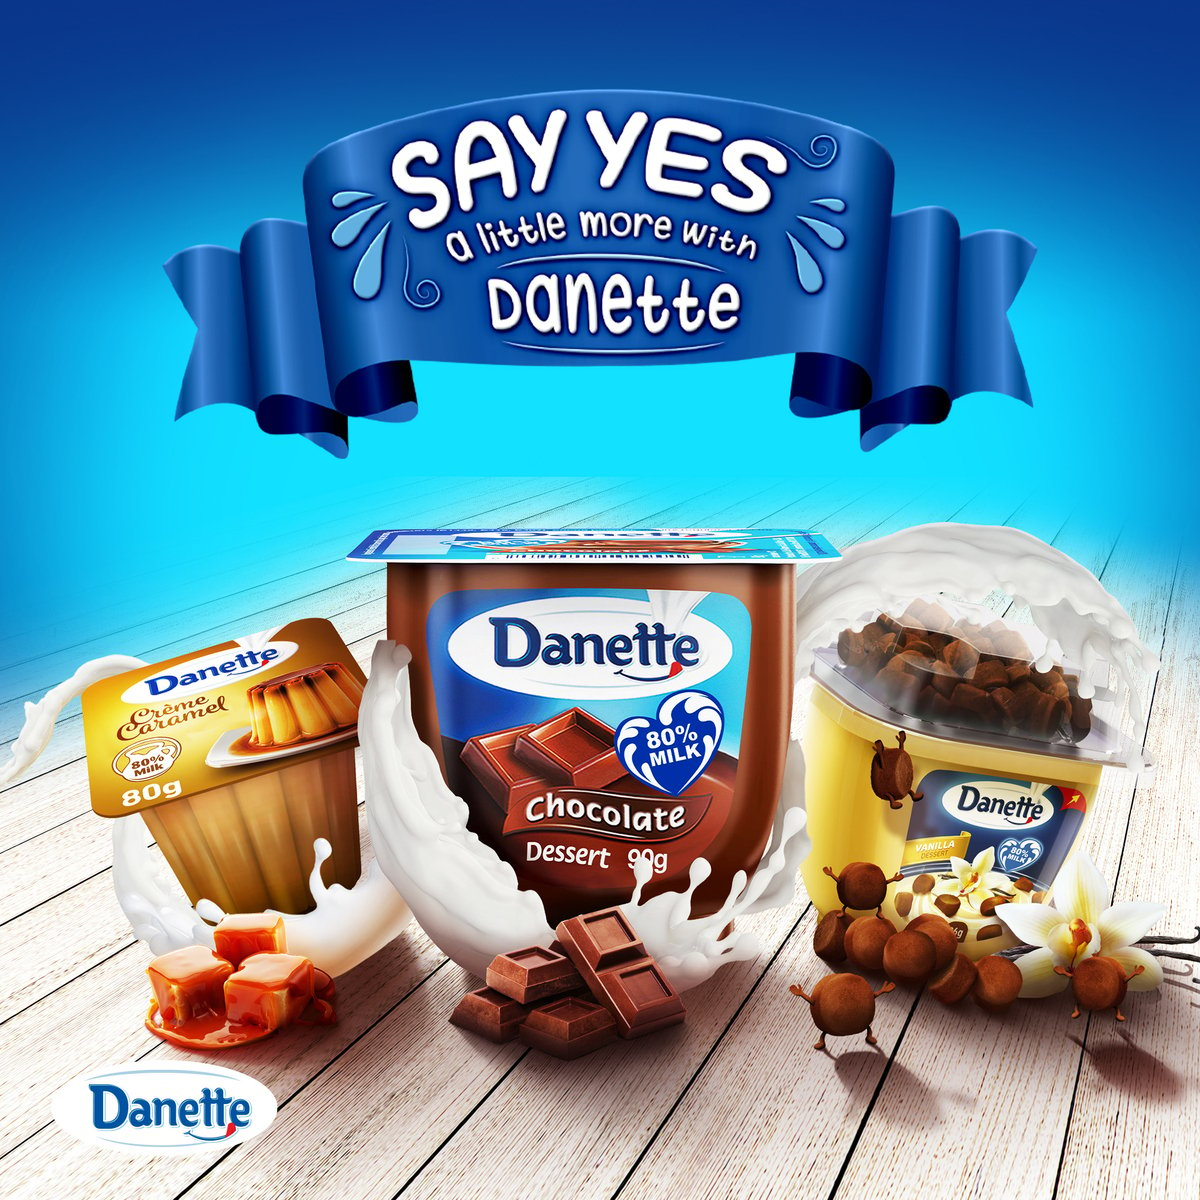 Danette Dessert Vanilla Flavour 90 g